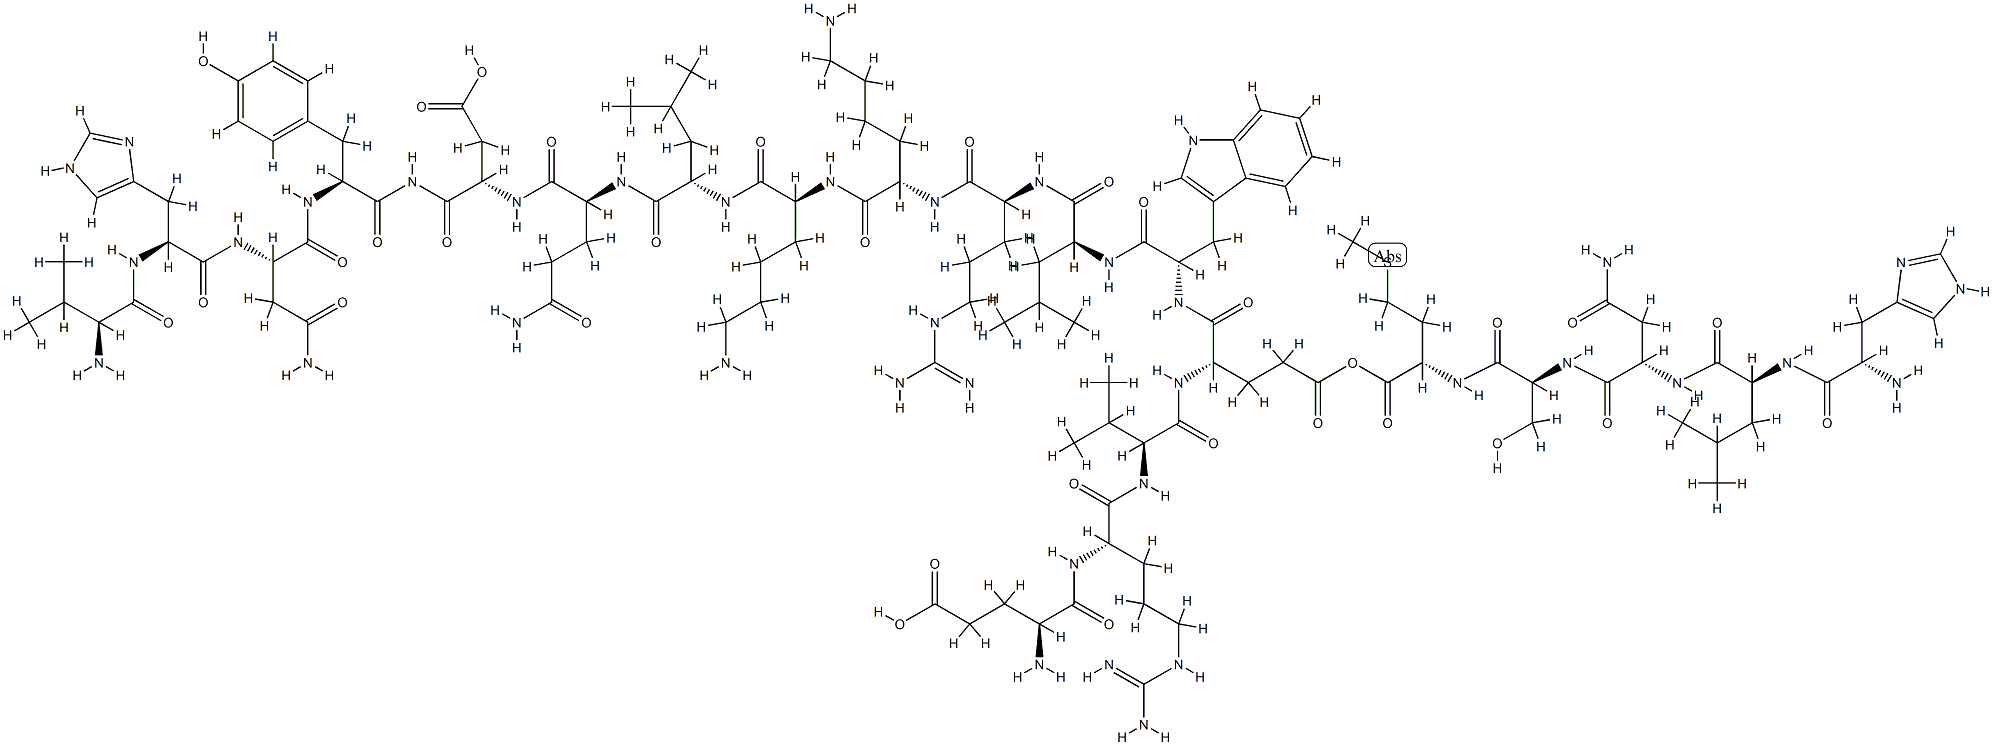 129476-27-3 parathyroid hormone (14-34) amide, Tyr(34)-